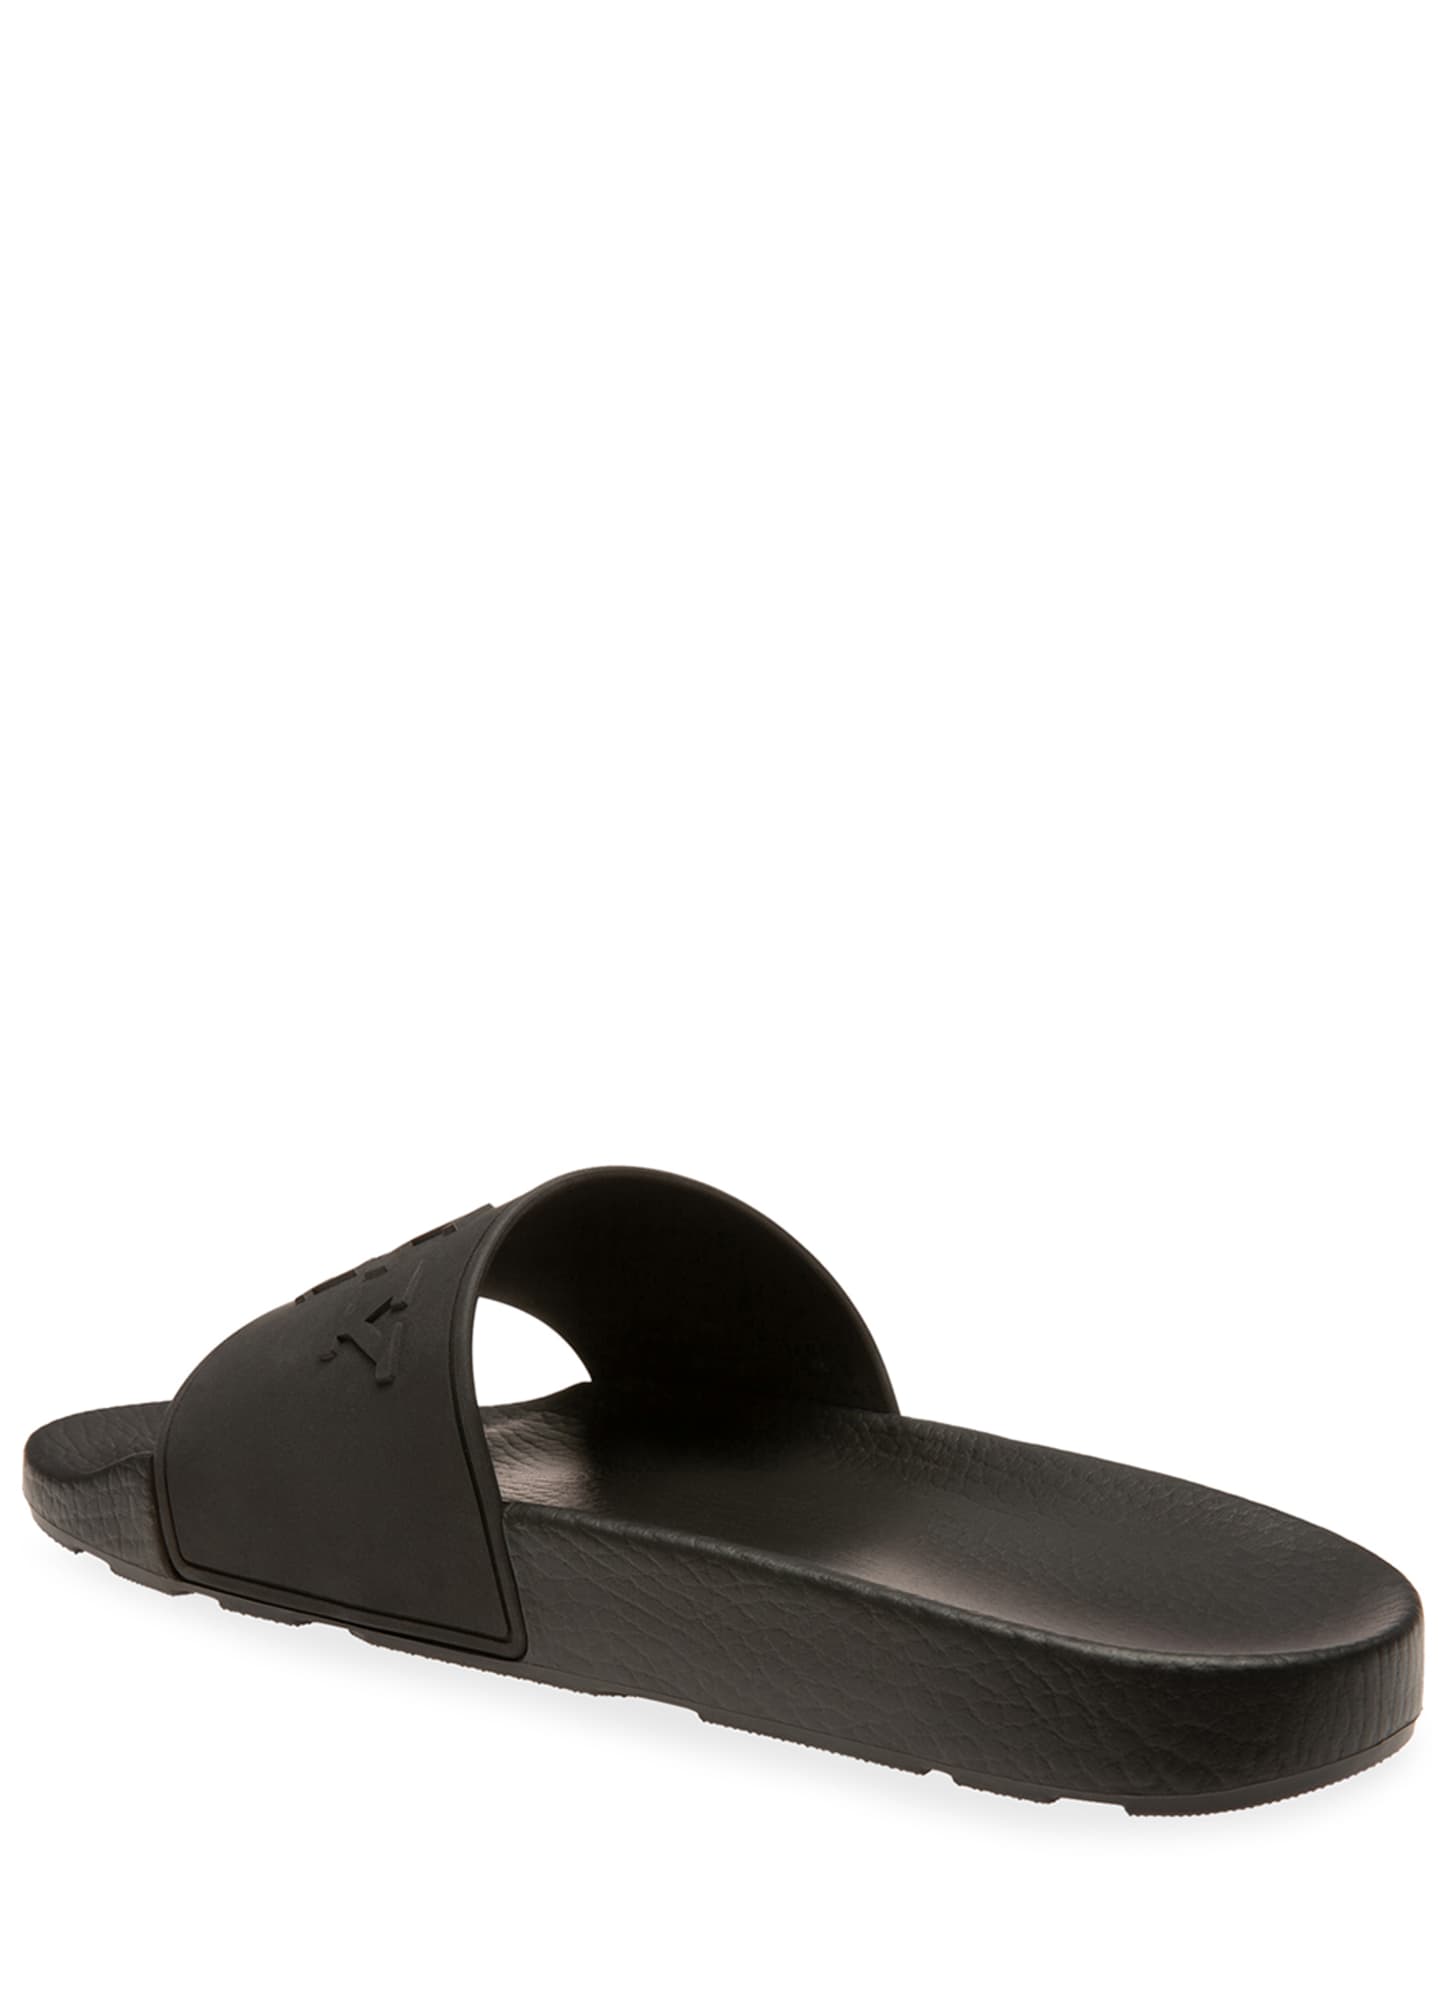 Bally Men's Slaim Rubber Slide Sandals - Bergdorf Goodman